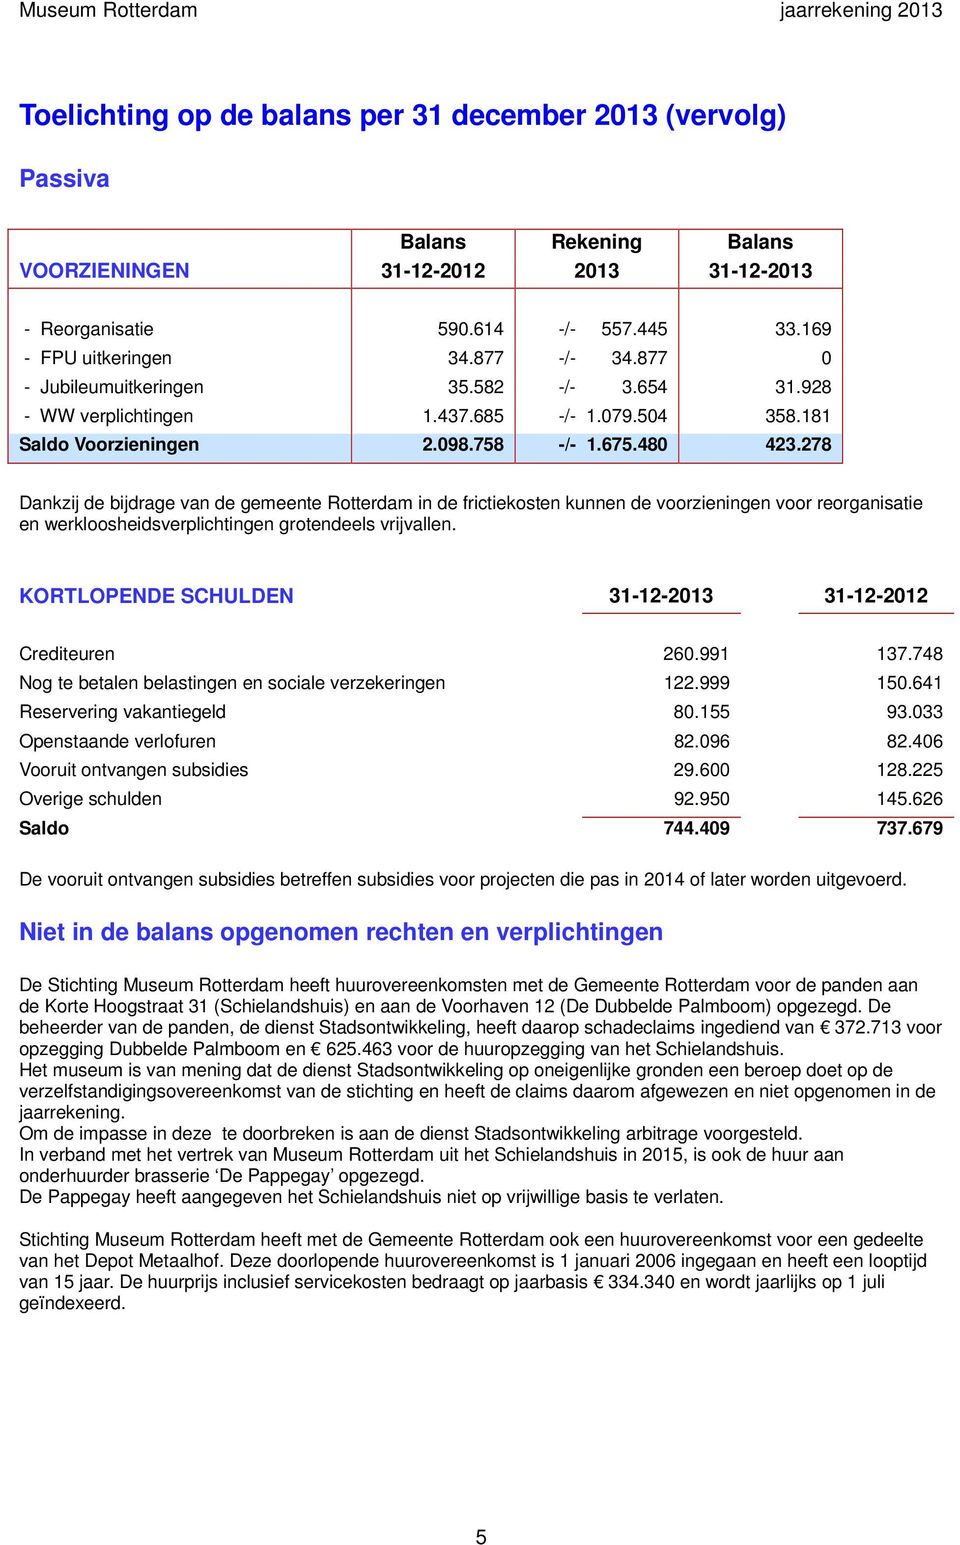 278 Dankzij de bijdrage van de gemeente Rotterdam in de frictiekosten kunnen de voorzieningen voor reorganisatie en werkloosheidsverplichtingen grotendeels vrijvallen.